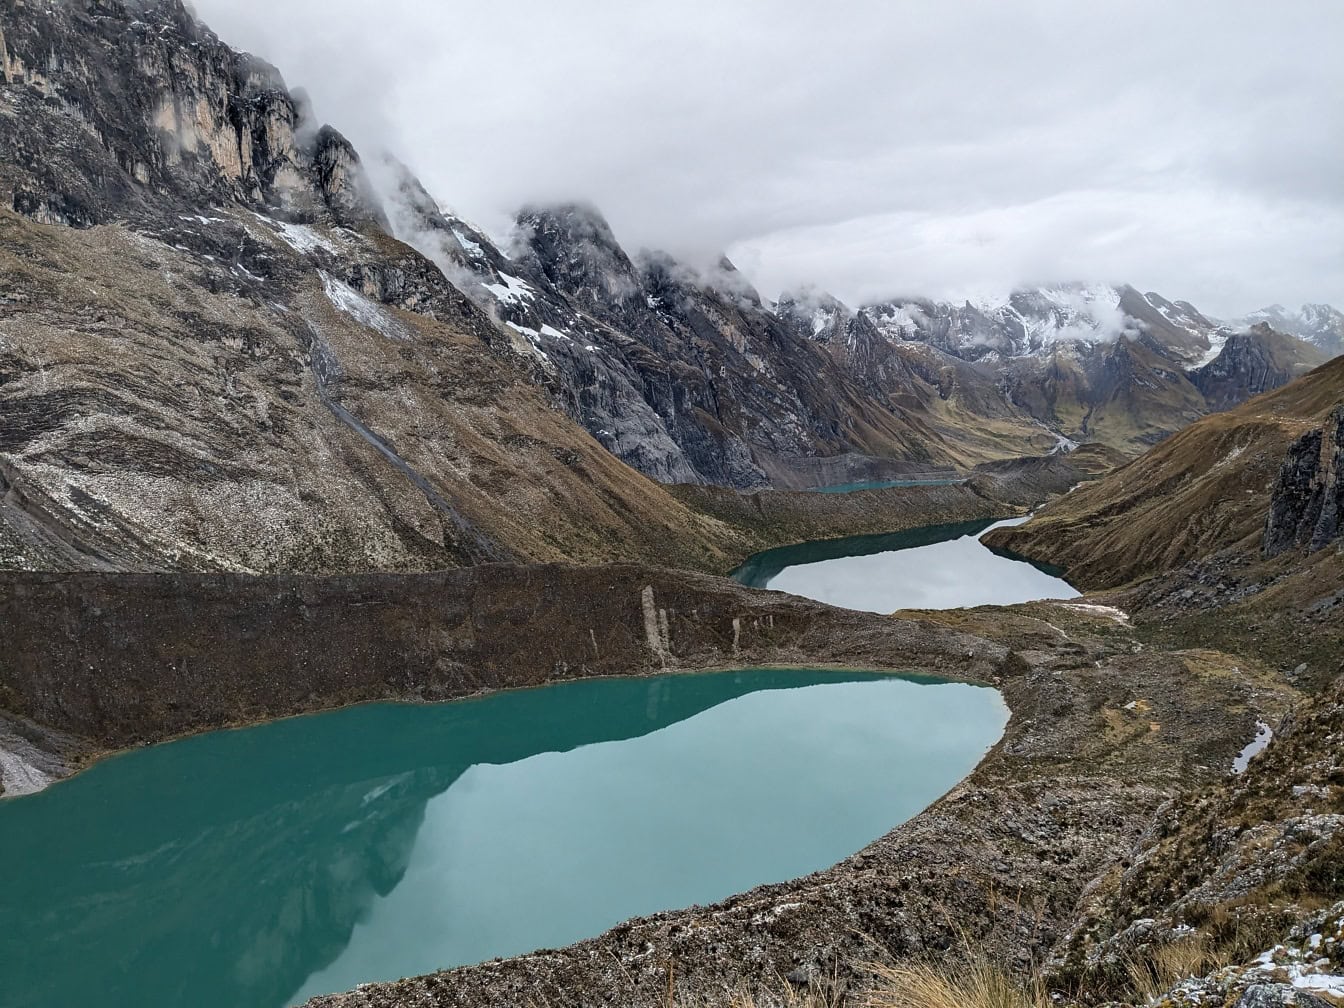 해발 약 4,000m의 Cordillera Huayhuash 산맥에 있는 아름다운 빙하 석호인 Jahuacocha 호수